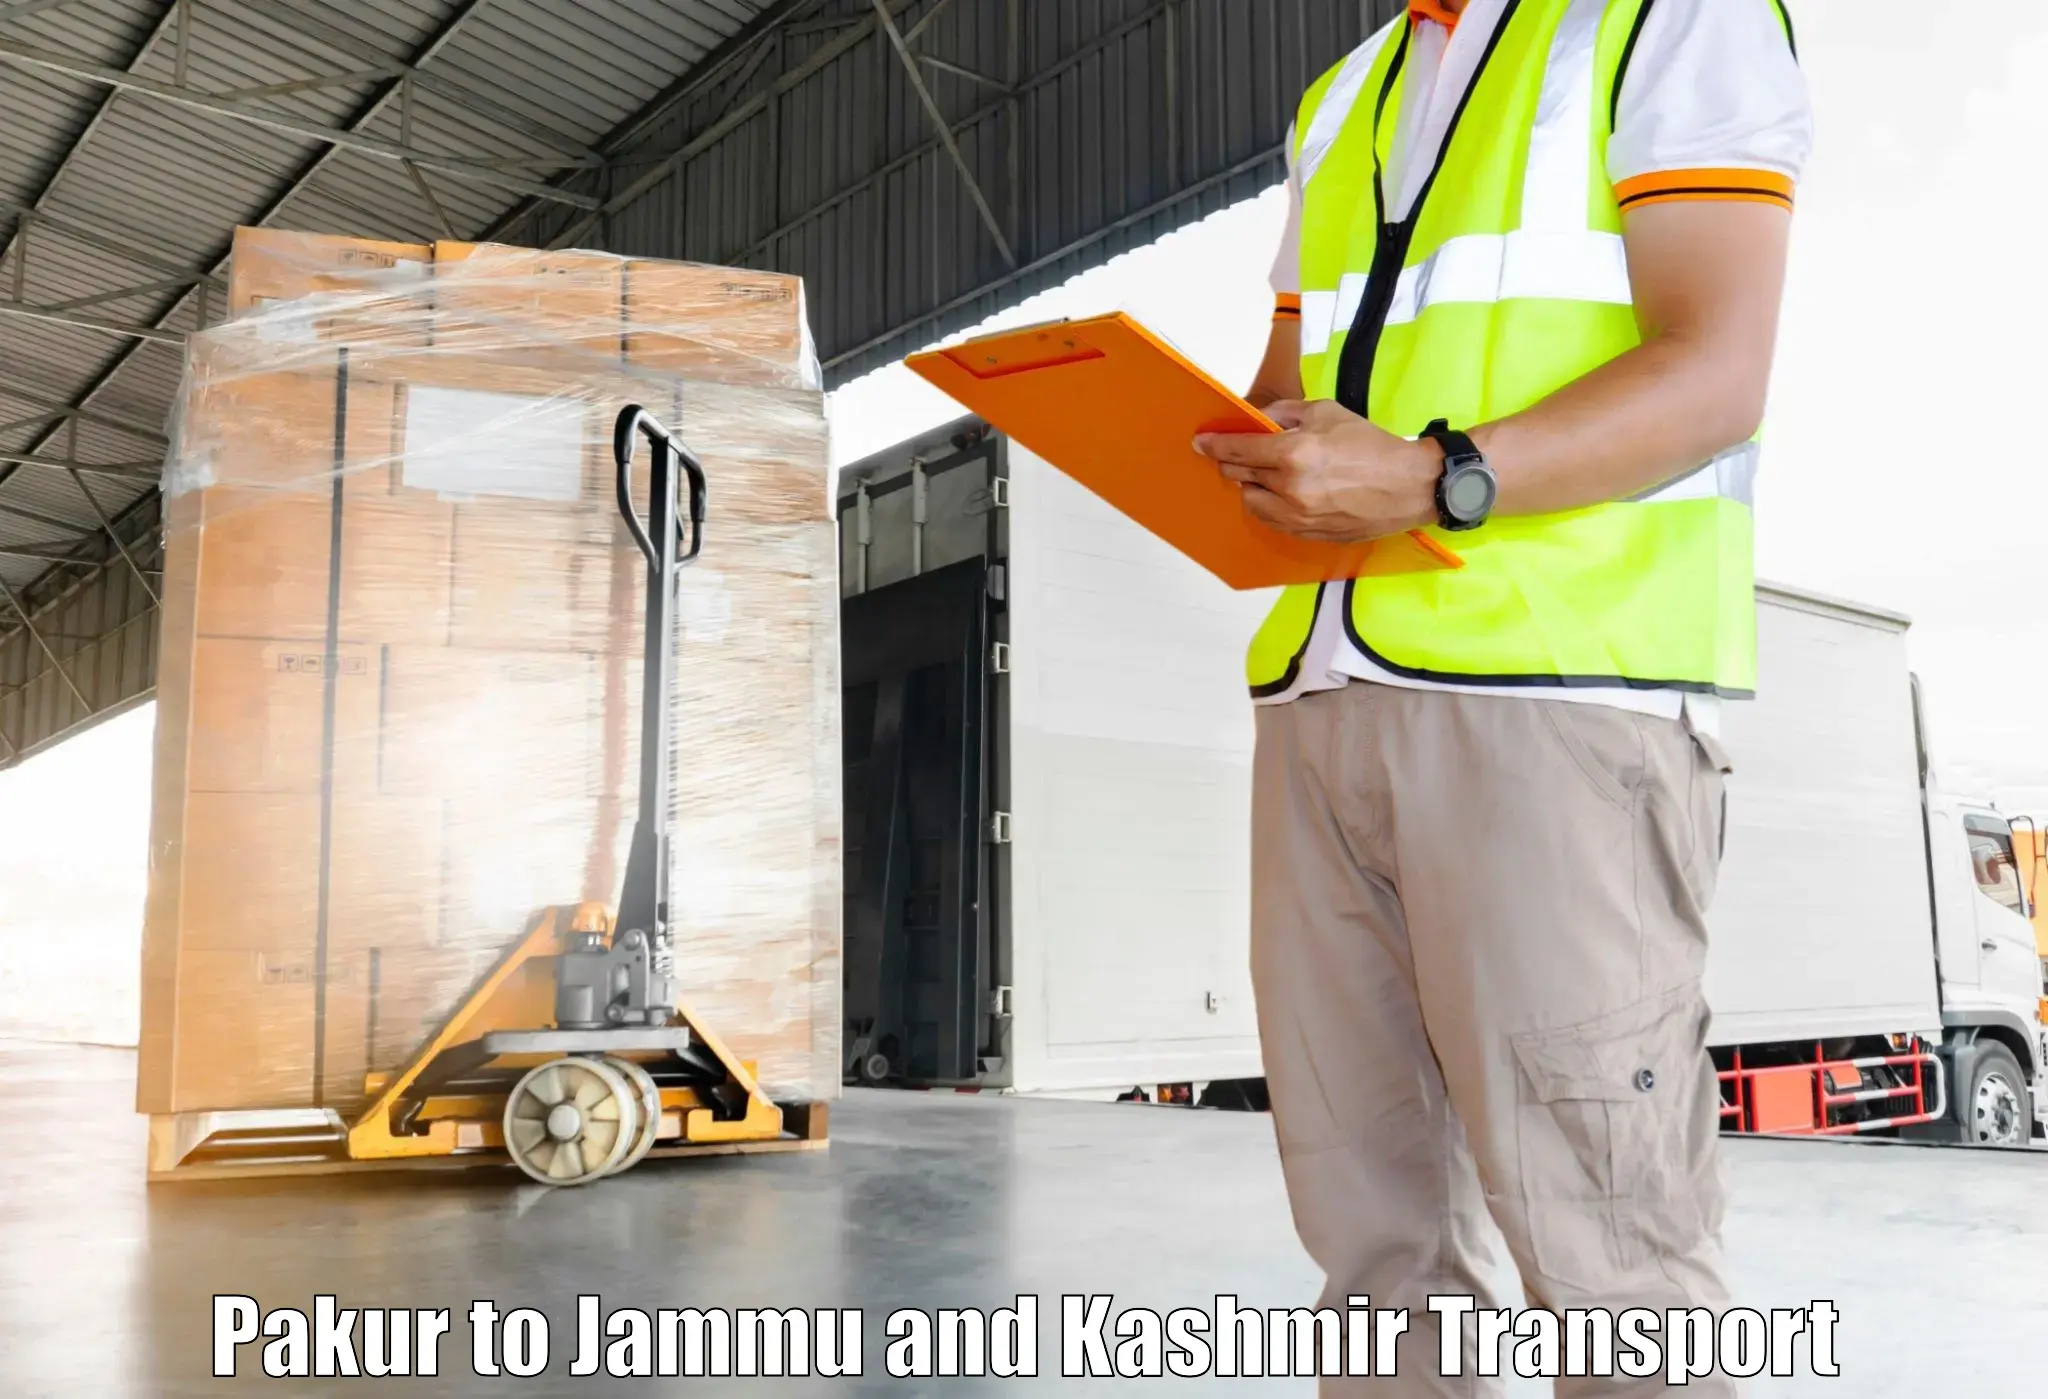 Daily transport service Pakur to University of Jammu